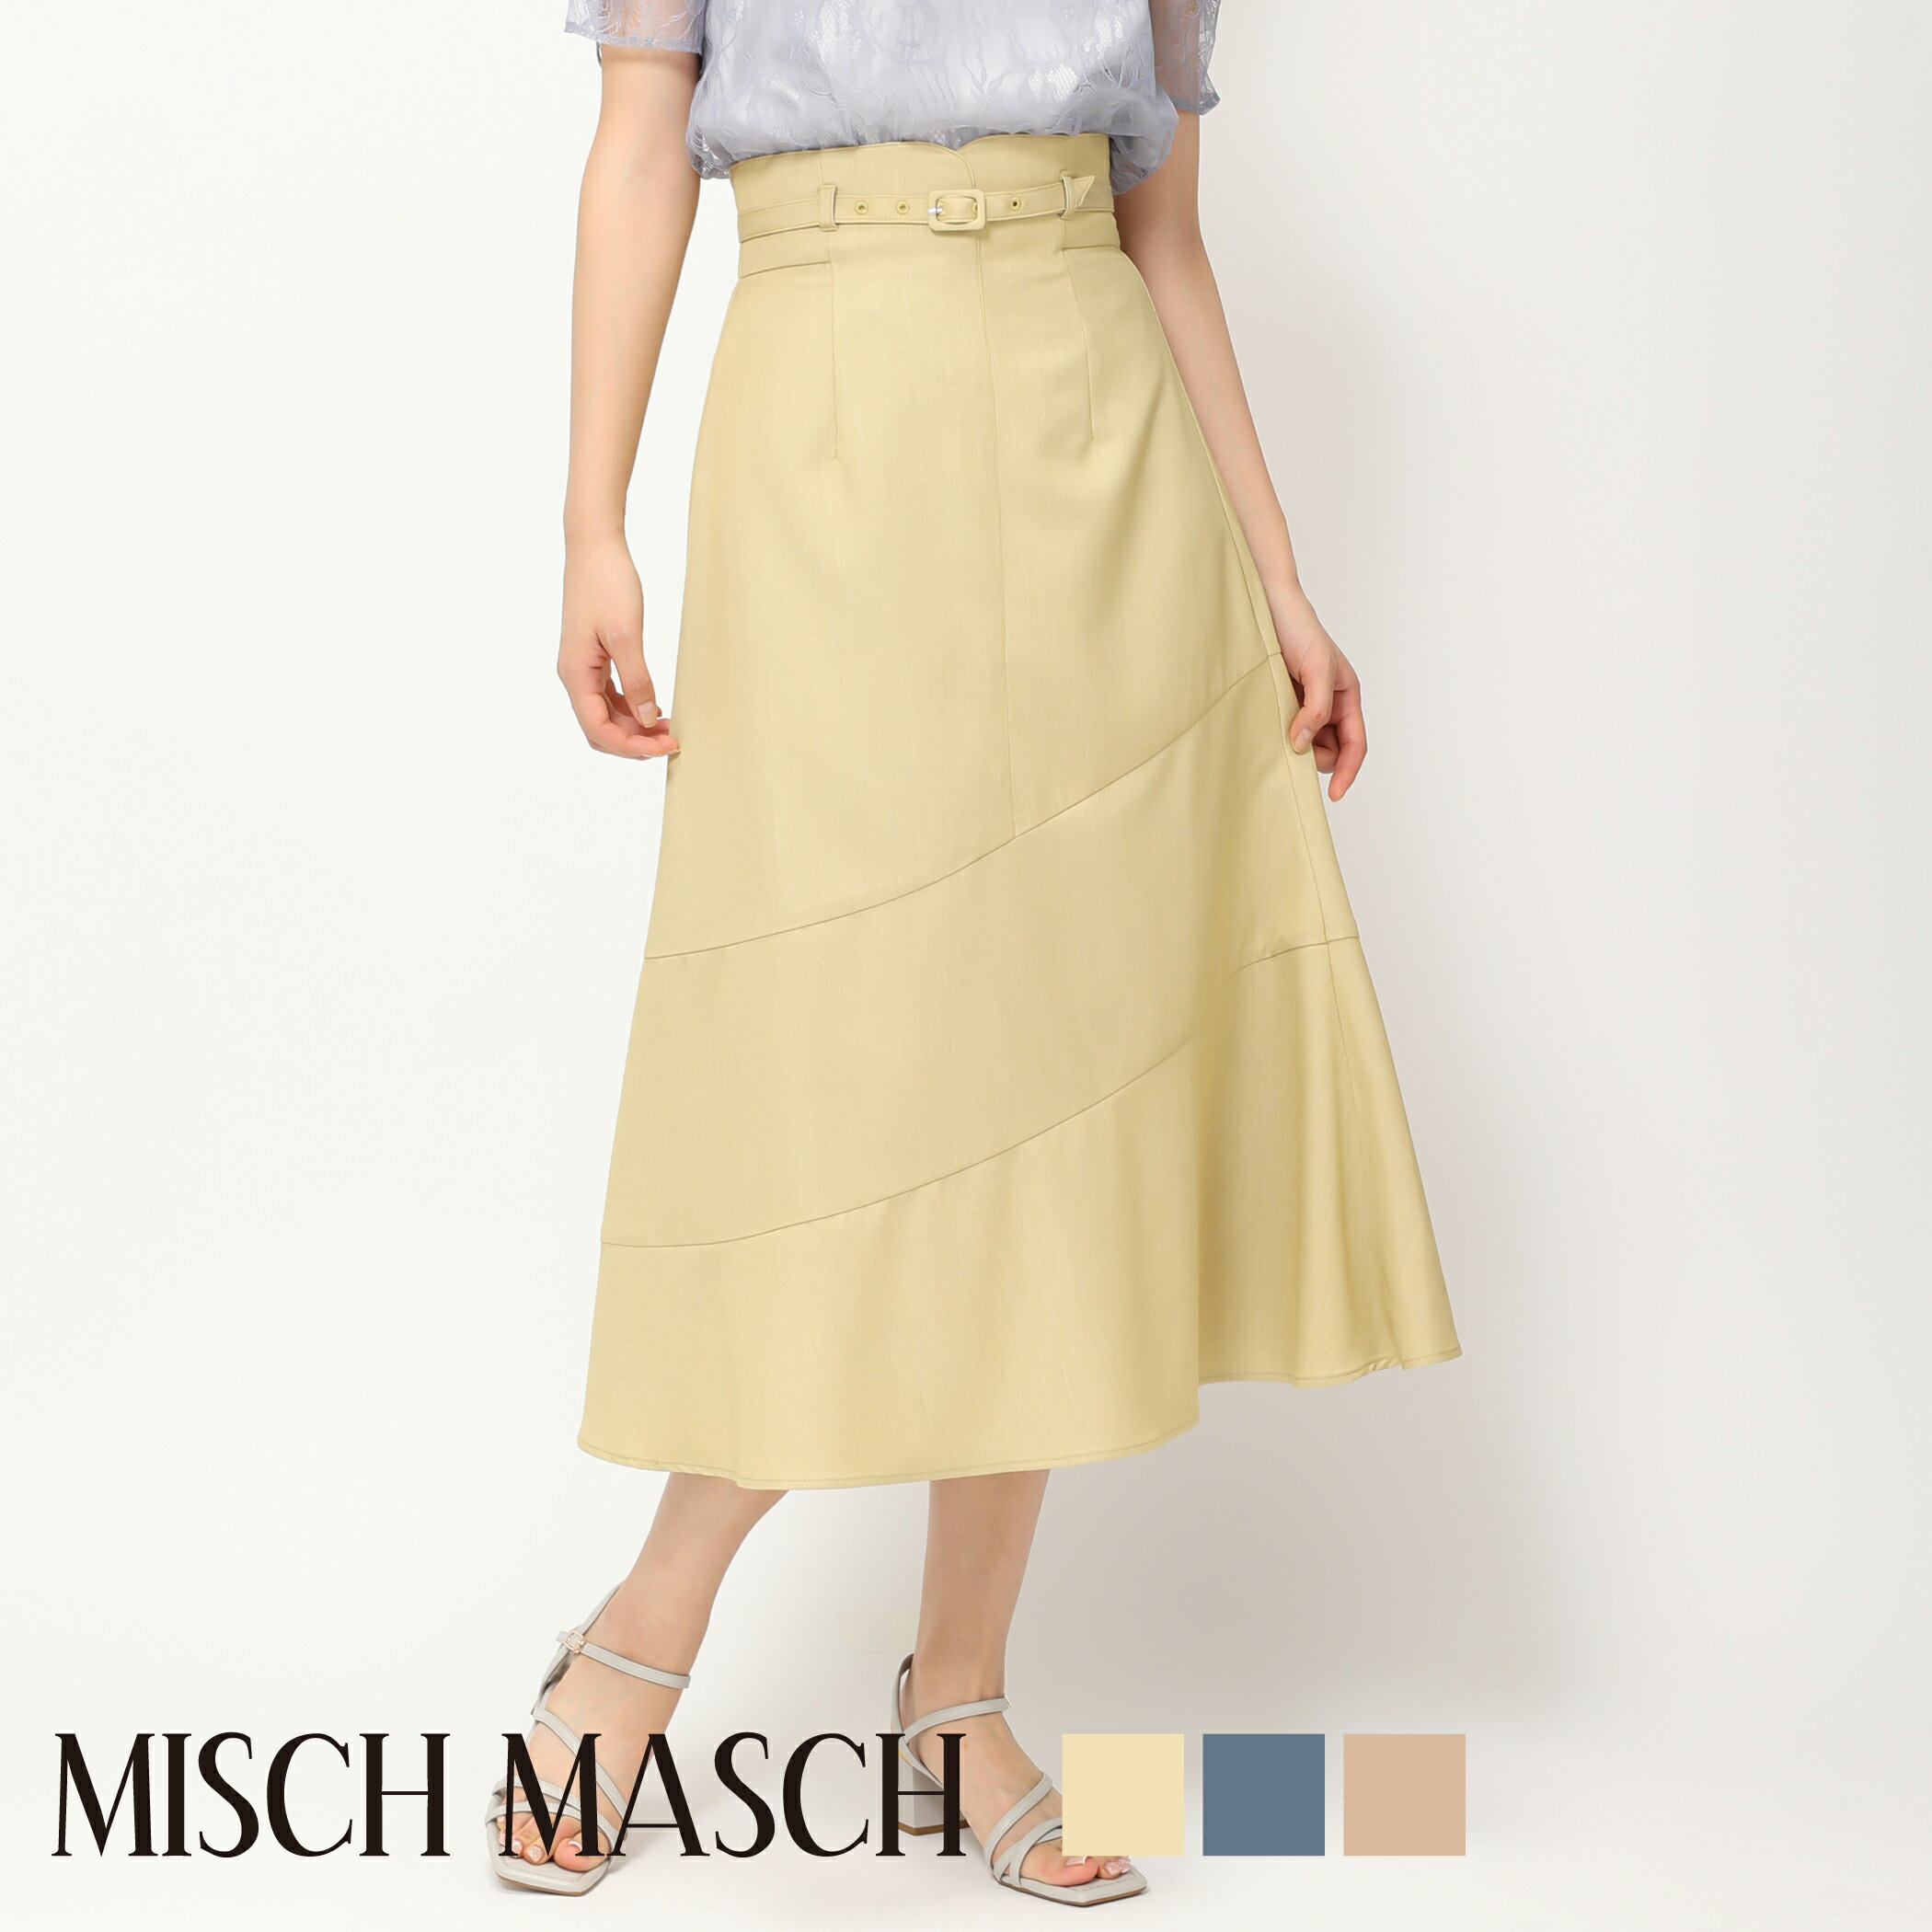 【MISCH MASCH】【ミッシュマッシュ】【公式】【フェミニン】アシメ切替Aラインスカート/mm427211